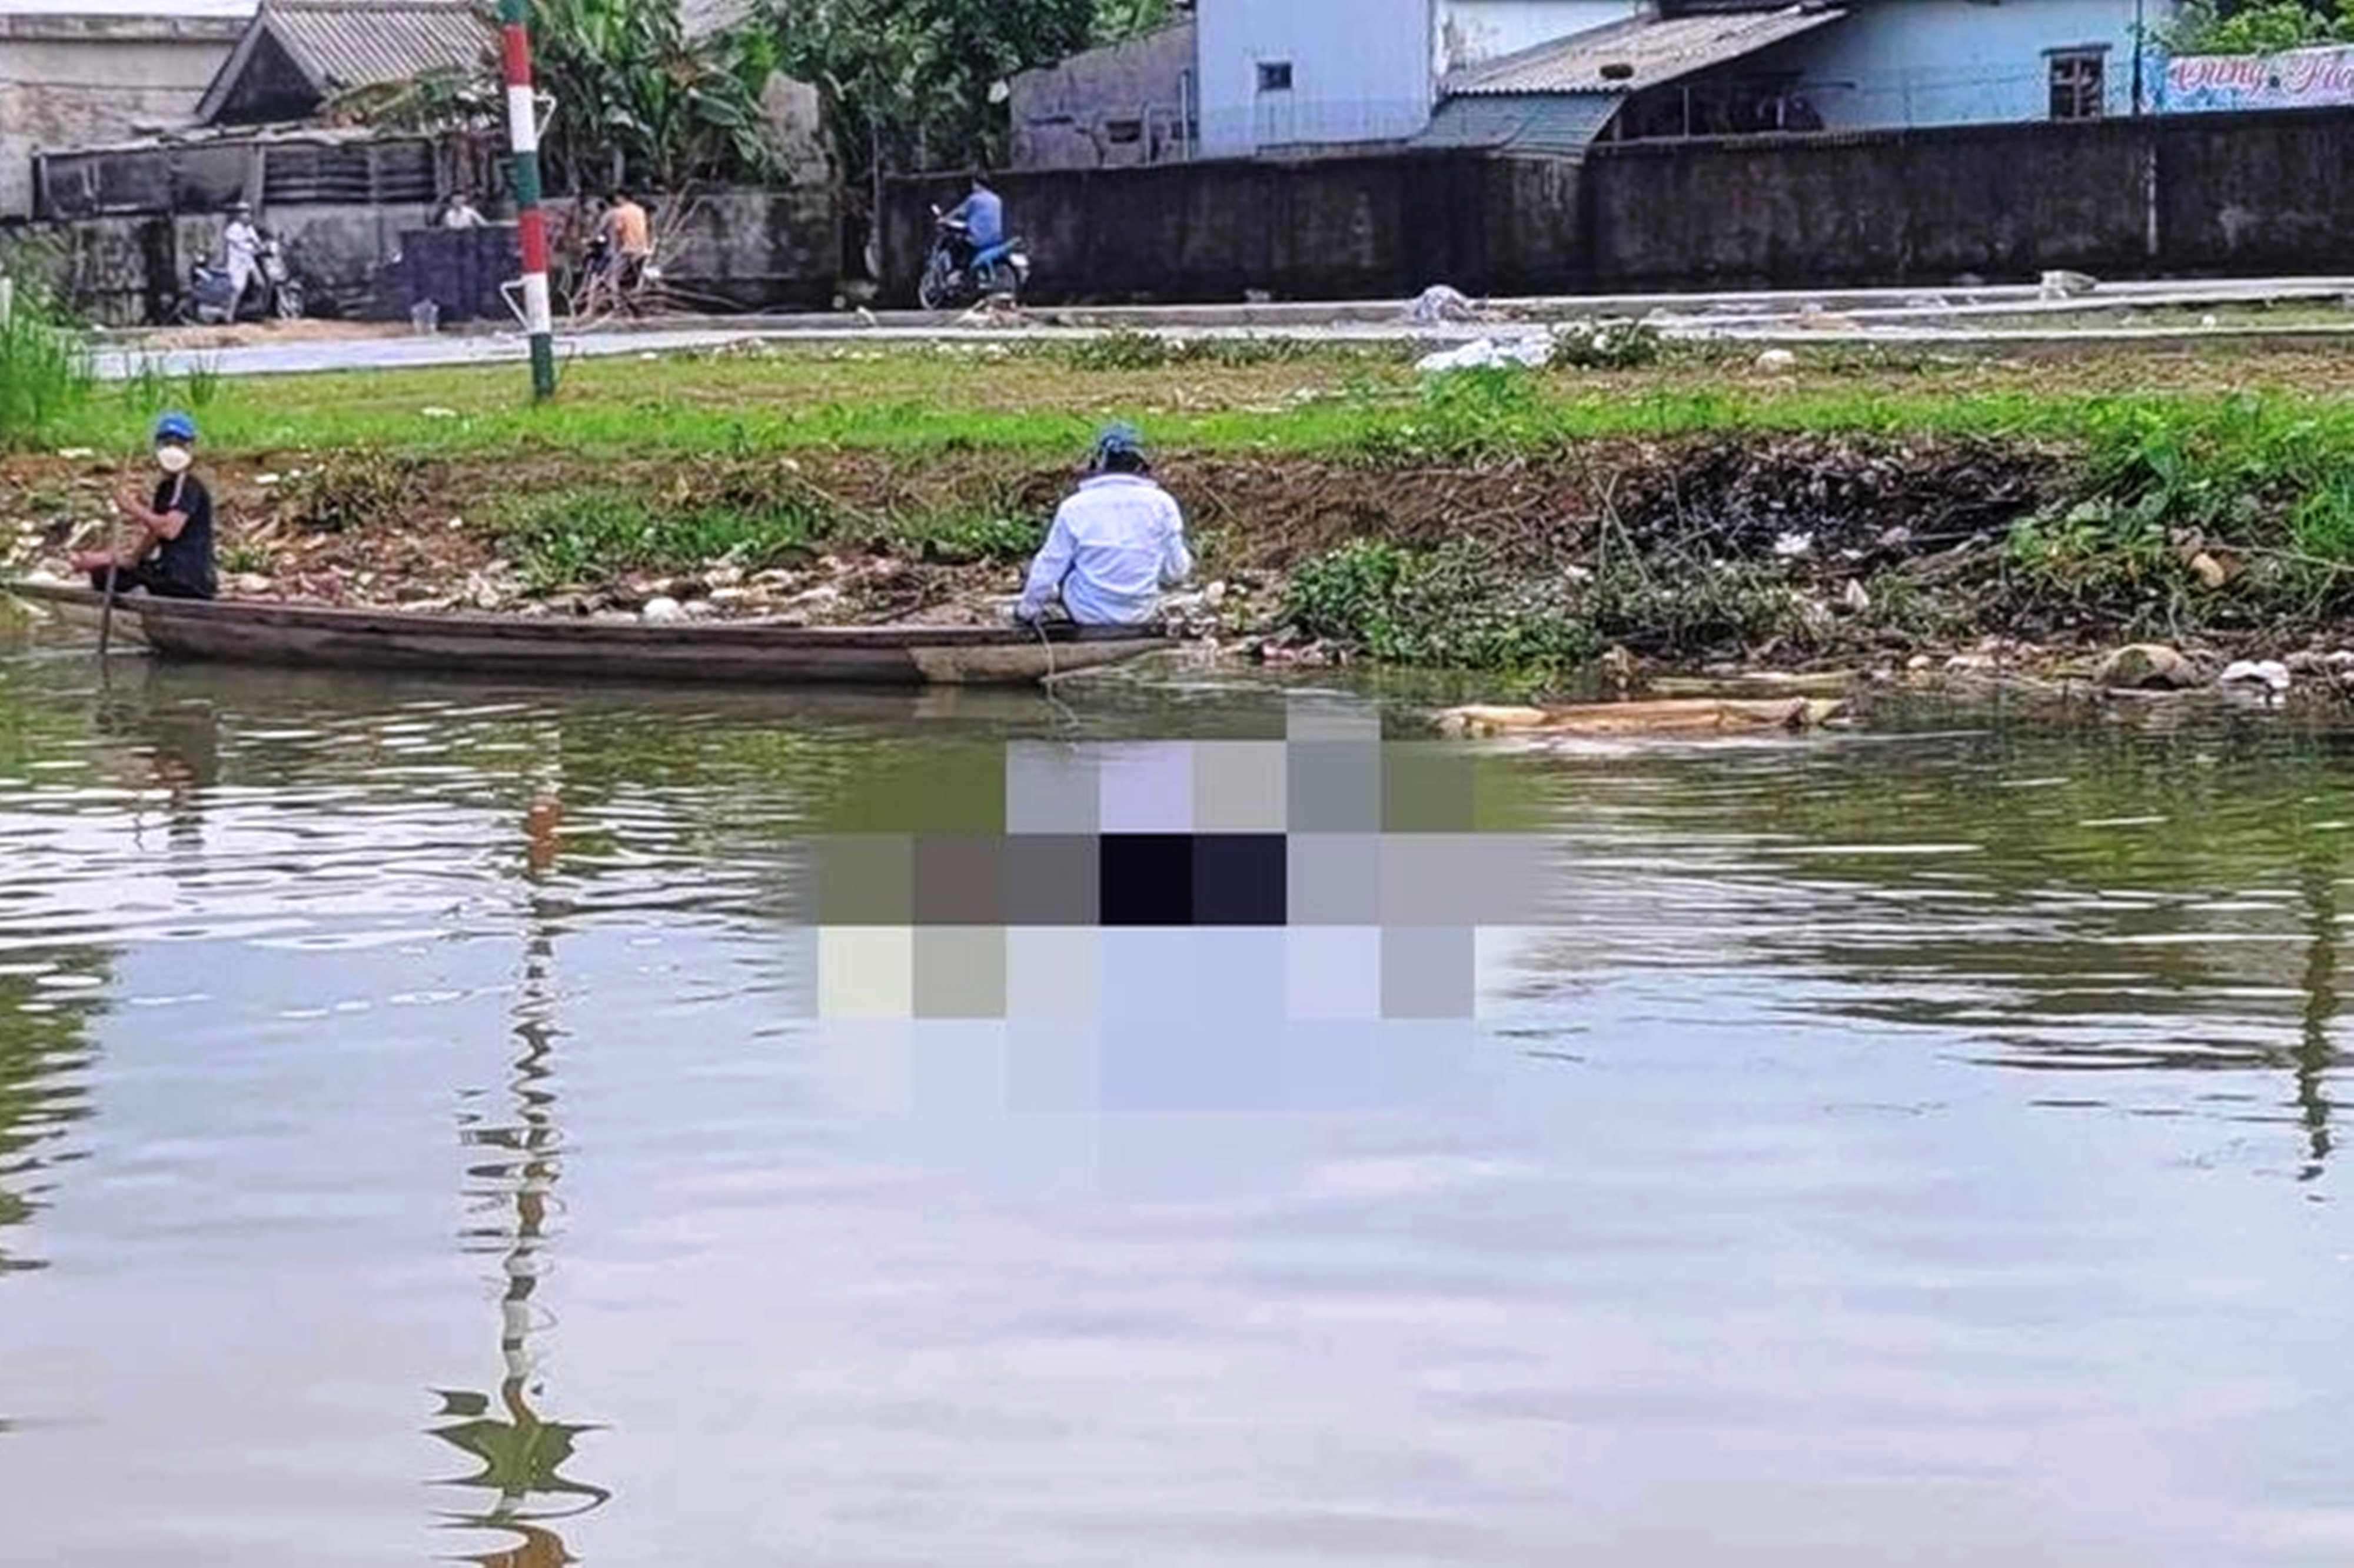 Phát hiện thi thể nam thanh niên nổi trên sông Hương